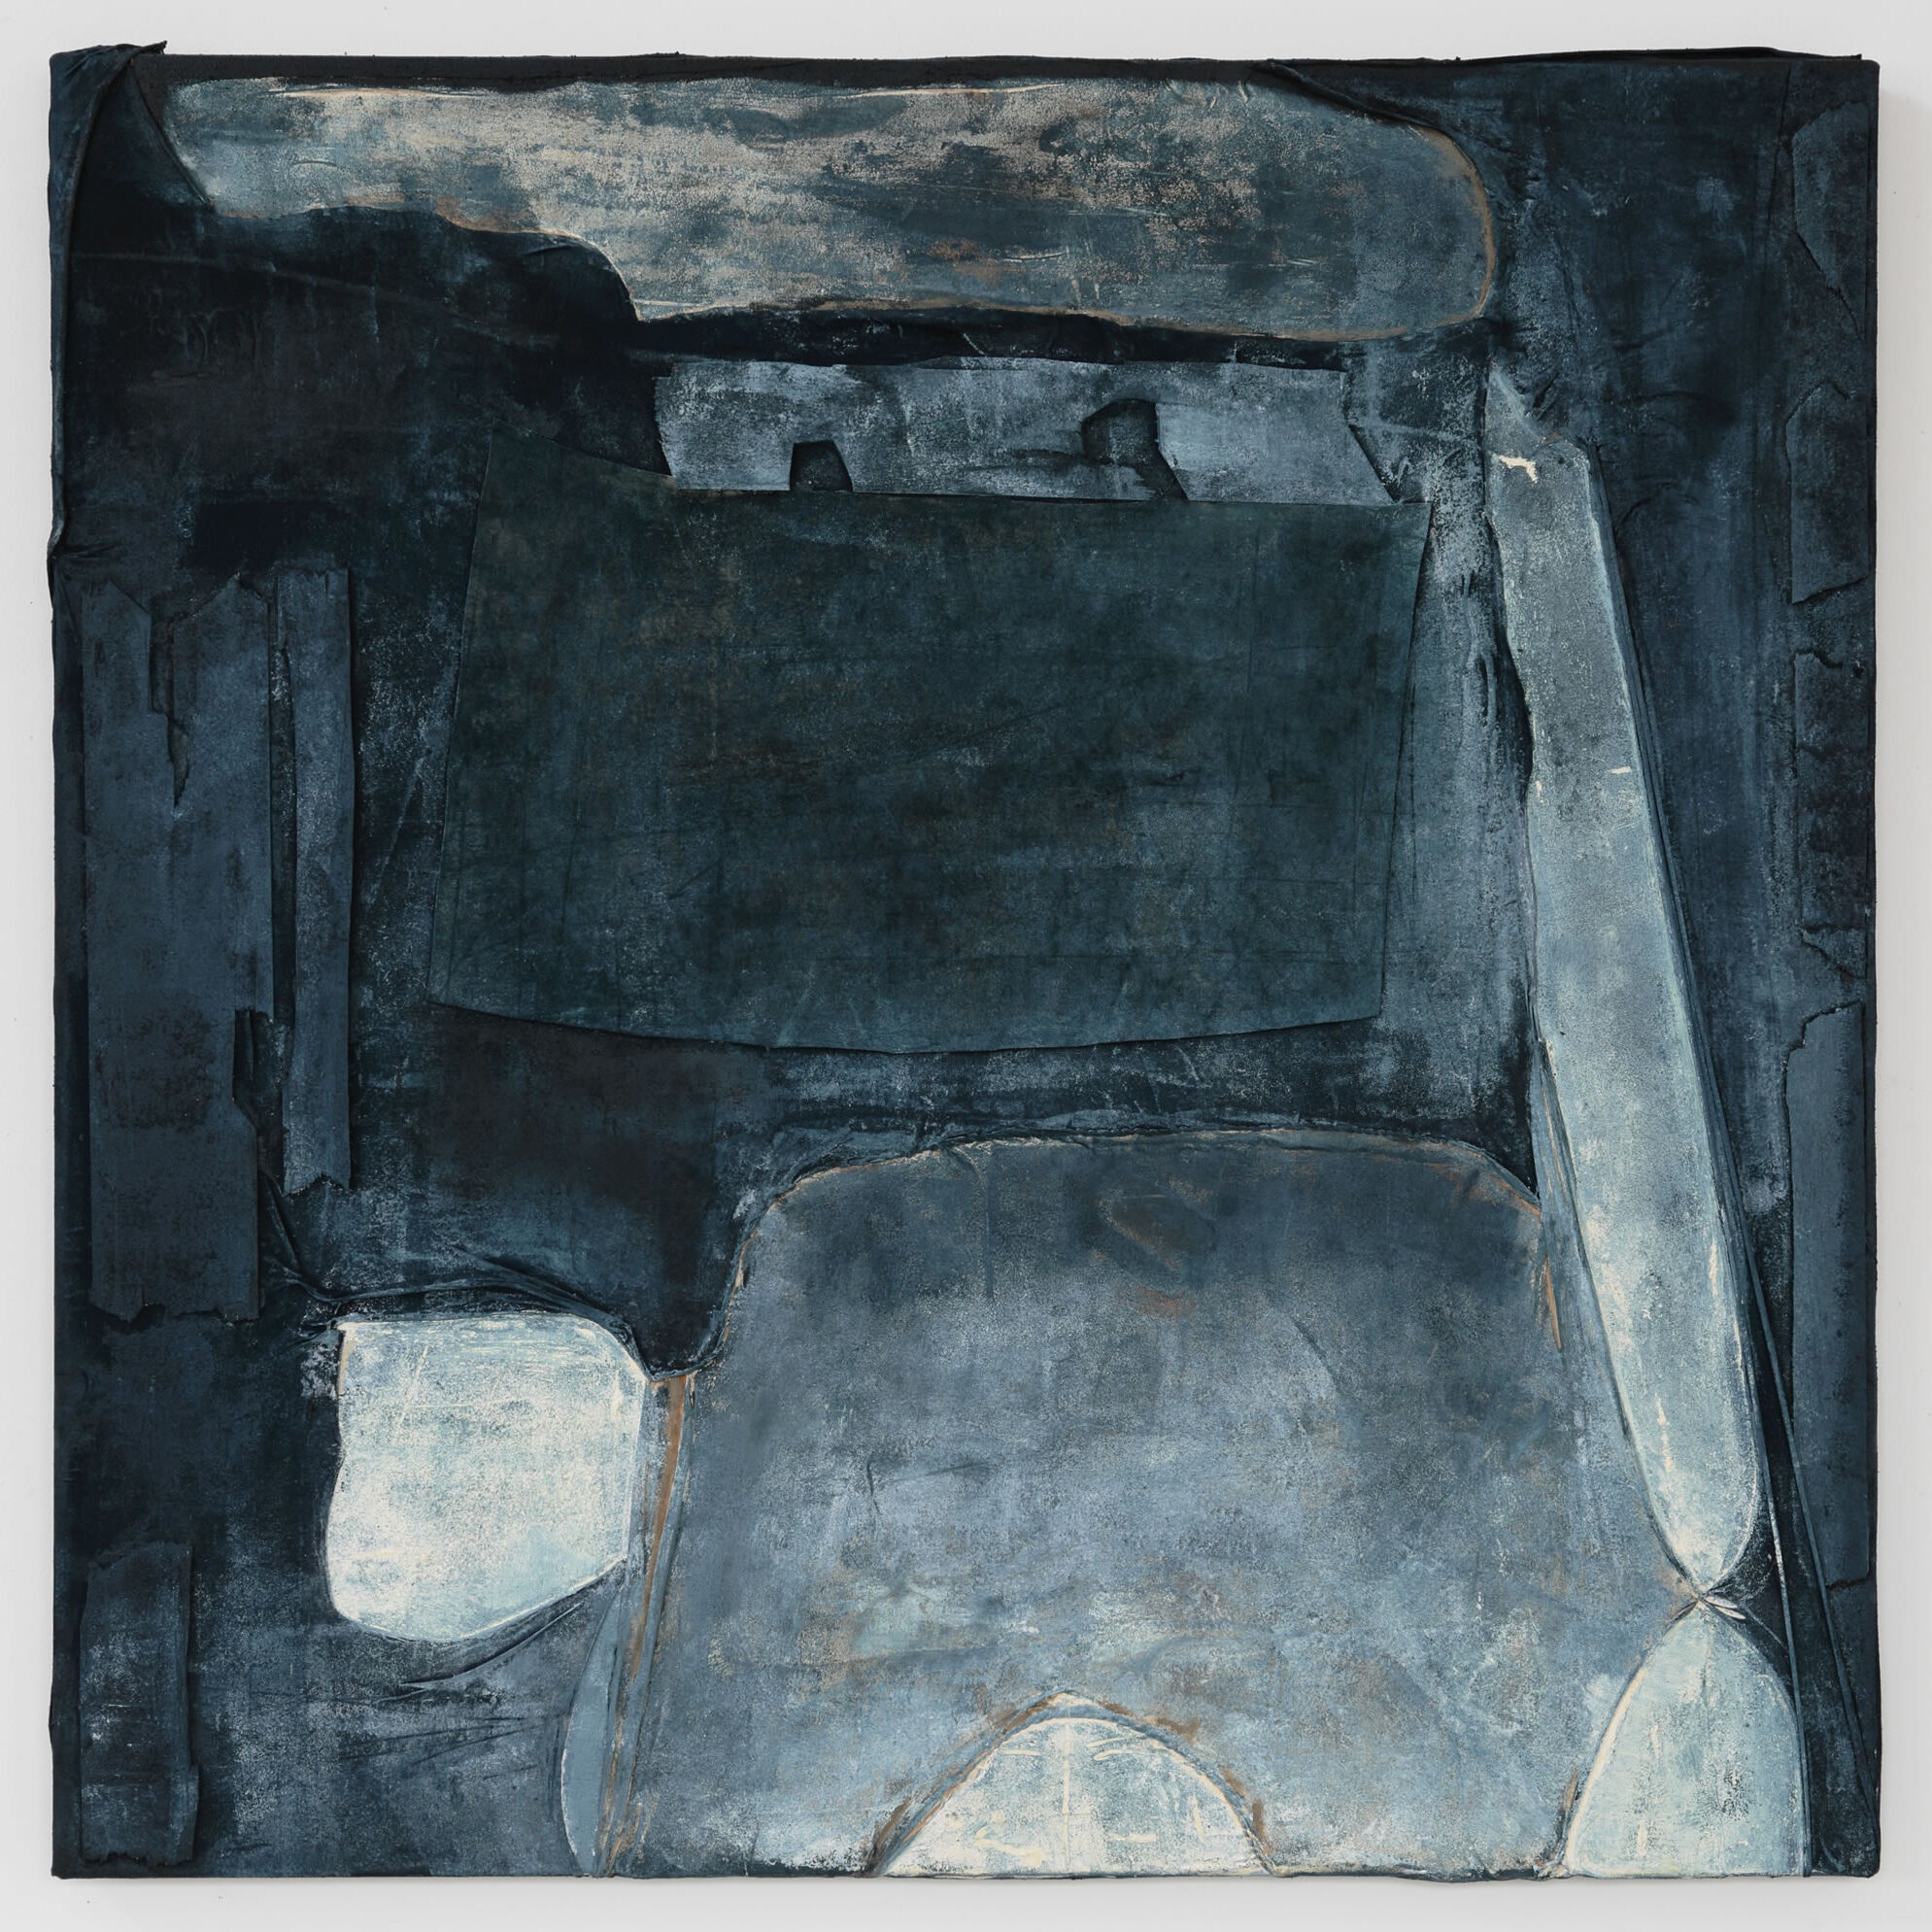 Anna Caione Gesto Blu,2018, fabric _ Mixed media on canvas, 100cm x 100cm